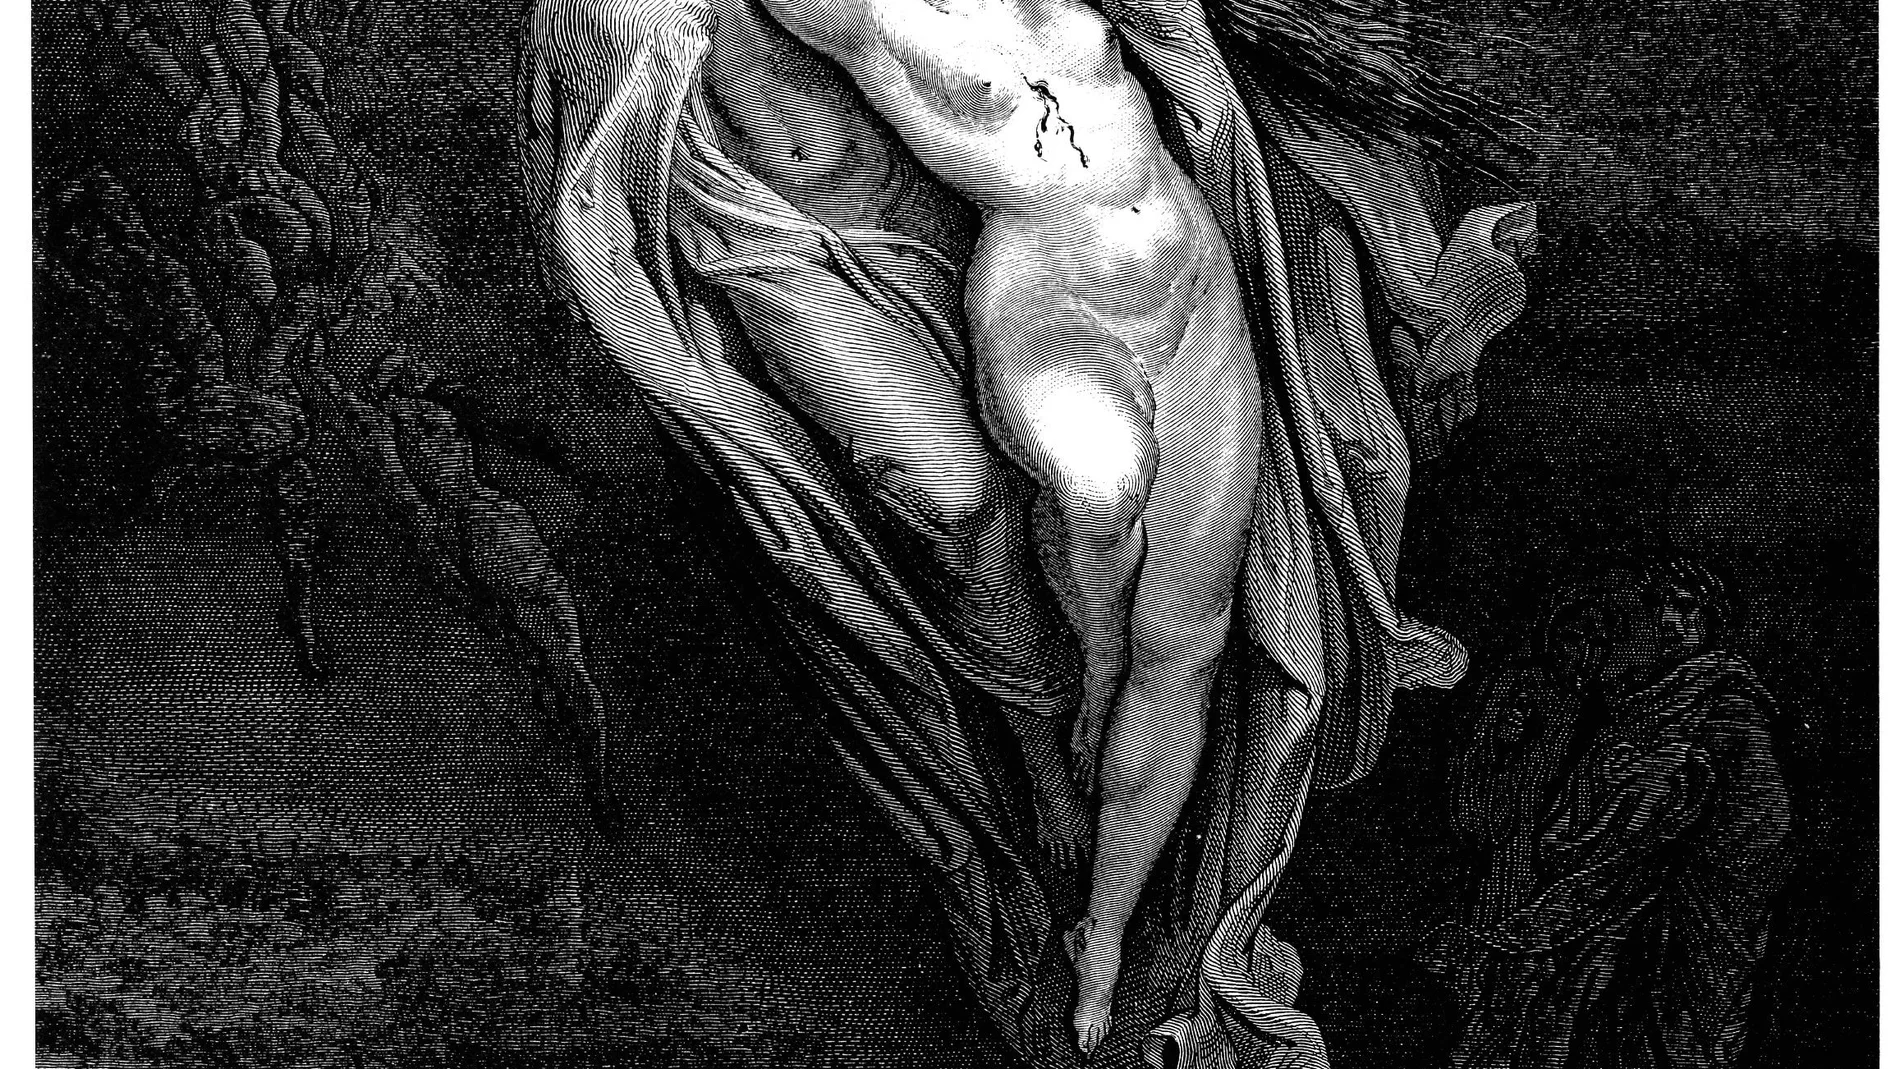 Imagen de Gustave Doré para el "infierno" del Dante